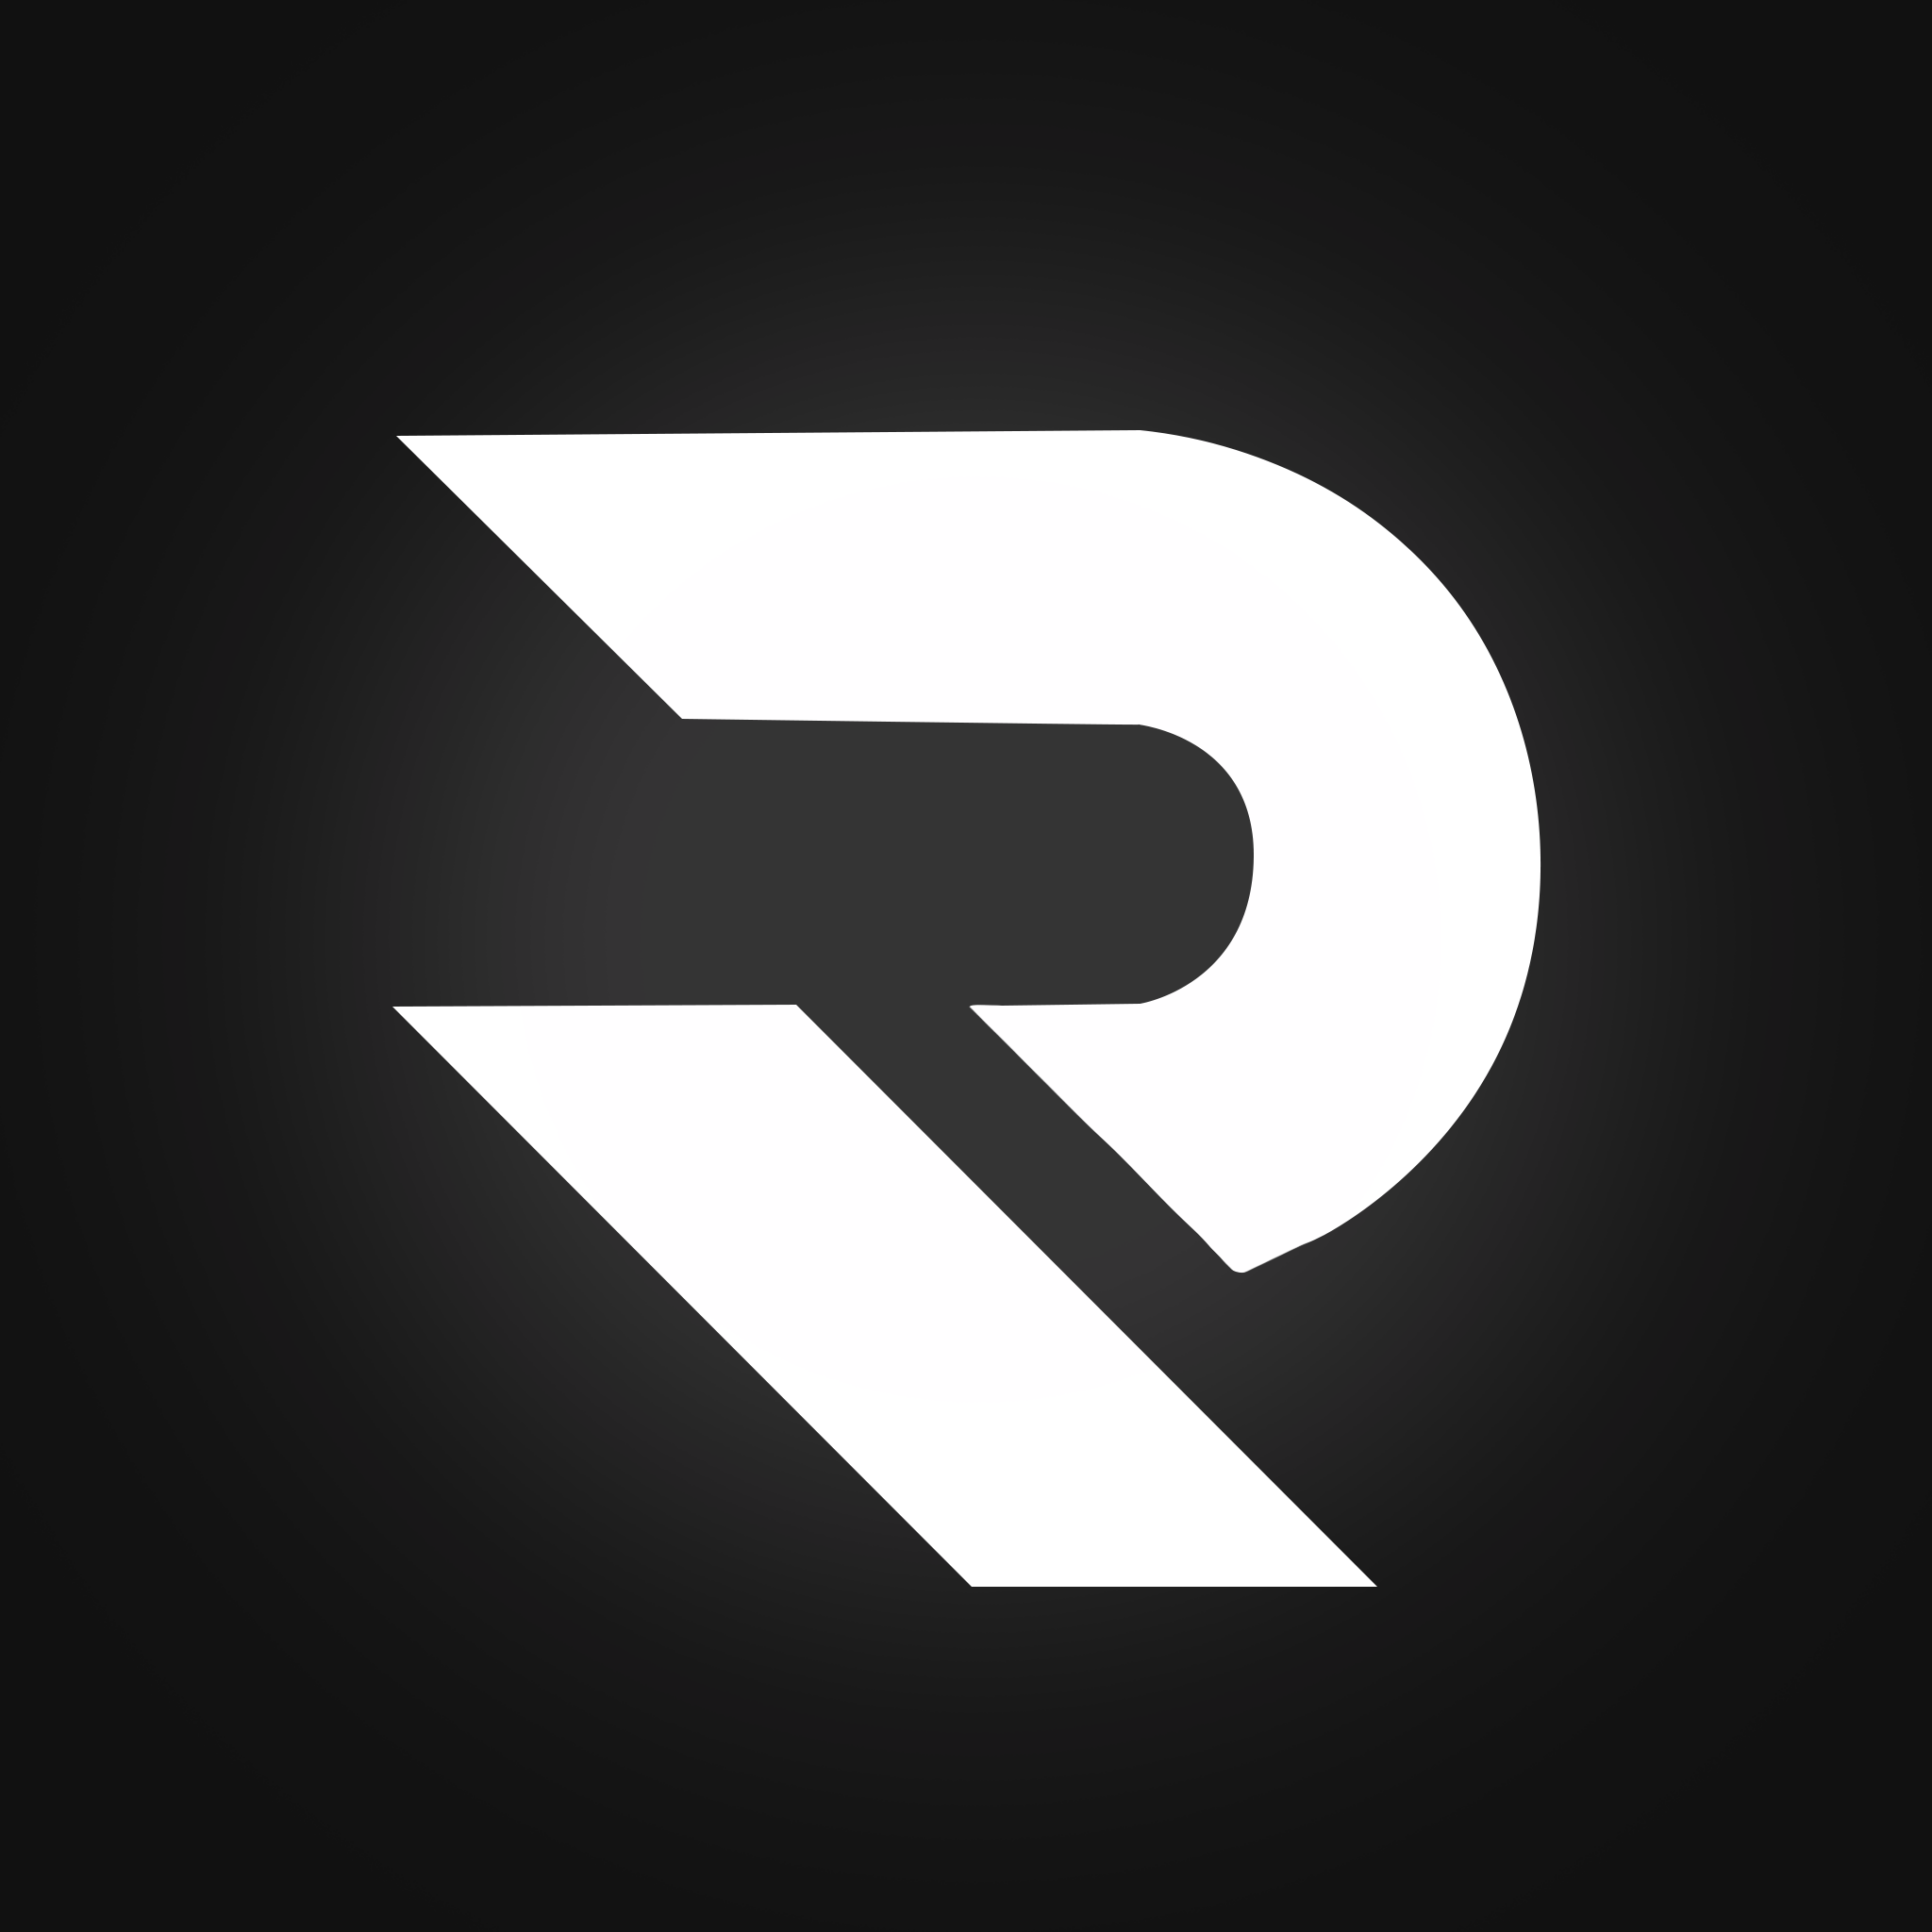 G 0 k p. Логотип r. Буква s для логотипа. Эмблема с буквой r. Ава r.